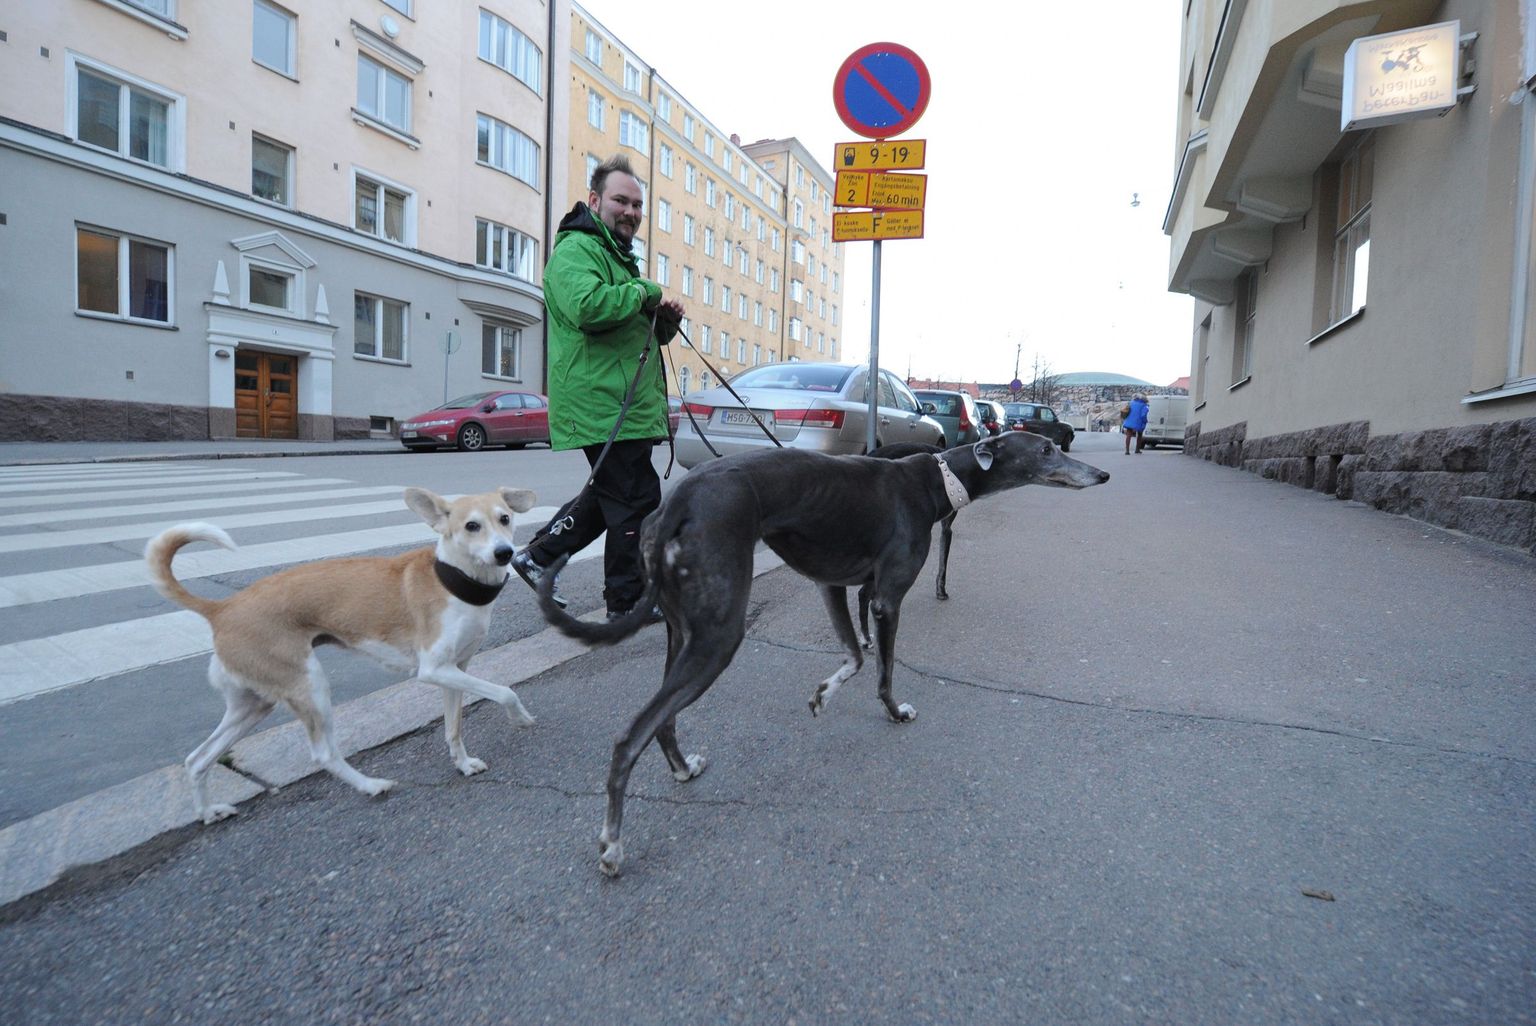 Helsingi koeraomanik koos lemmikutega.